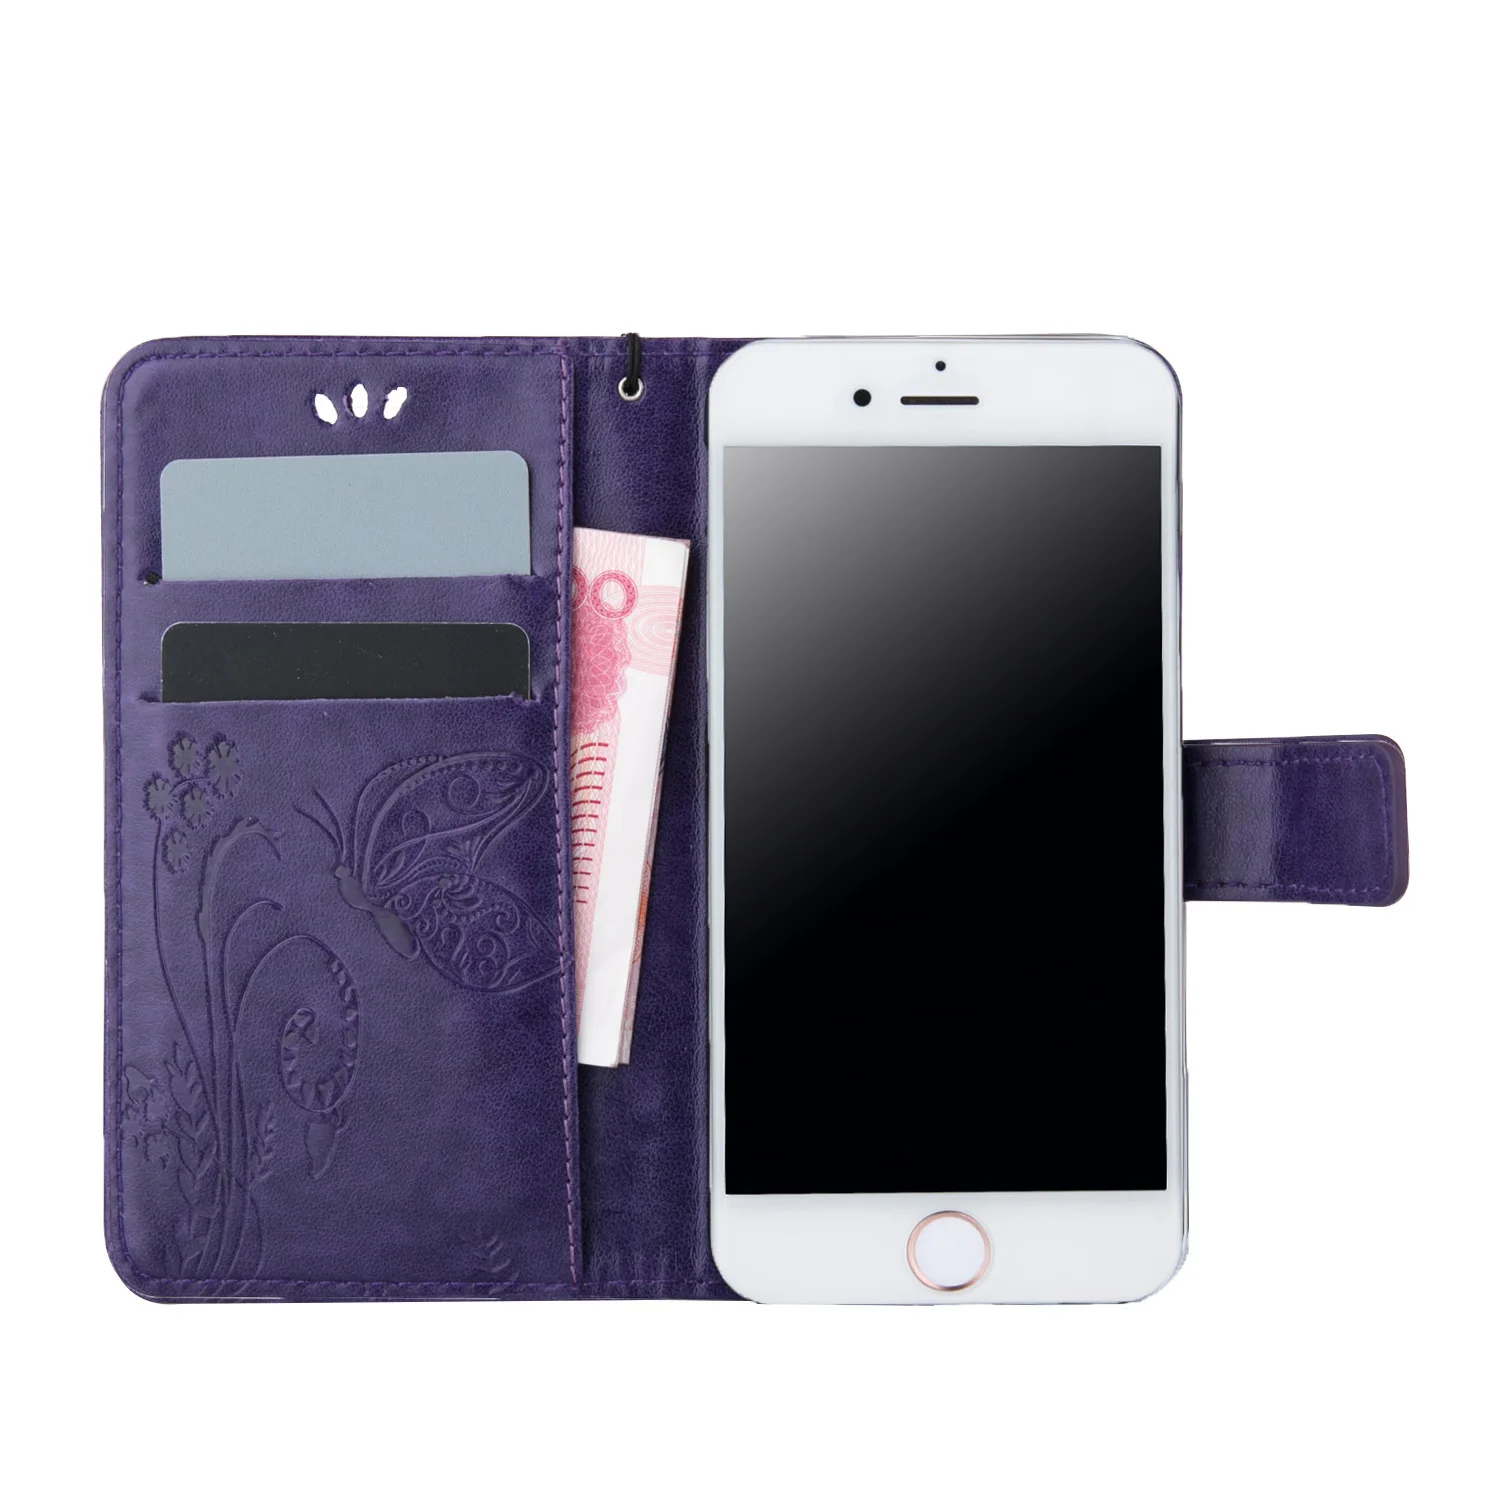 Чехол-бумажник для Fly FS530 FS520 FS458 FS408 FS409 FS506 FS507 FS511, высокое качество, кожаный защитный флип-чехол для мобильного телефона